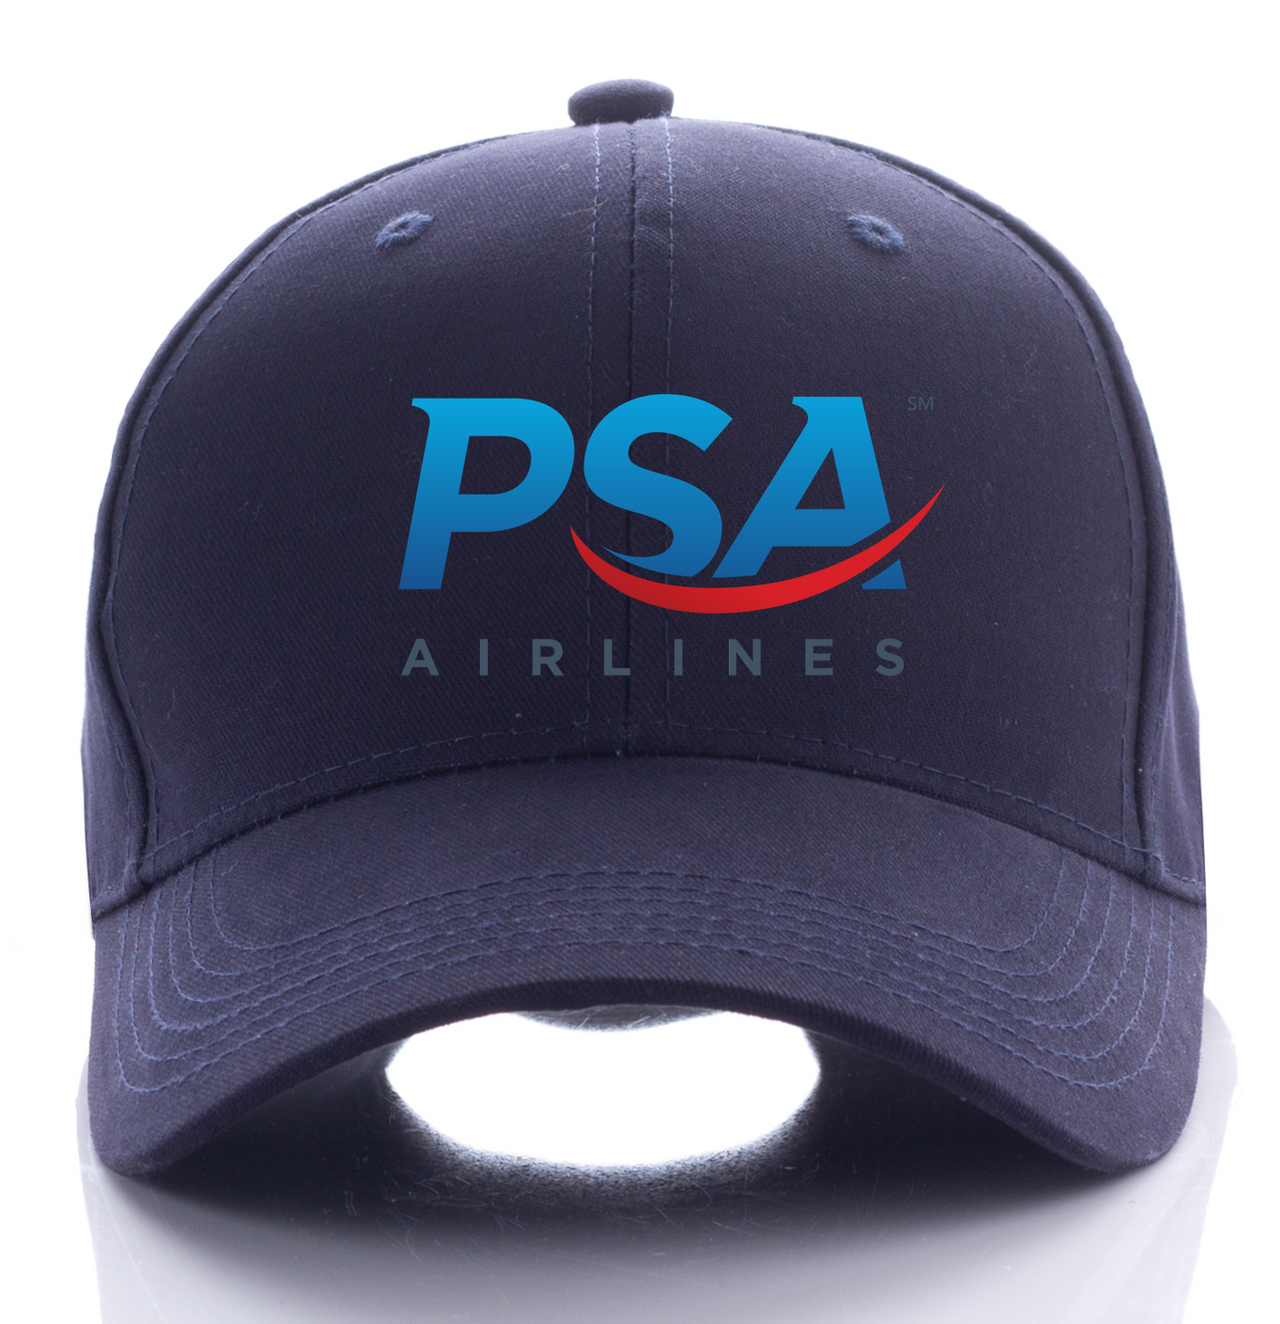 PSA AIRLINE DESIGNED CAP